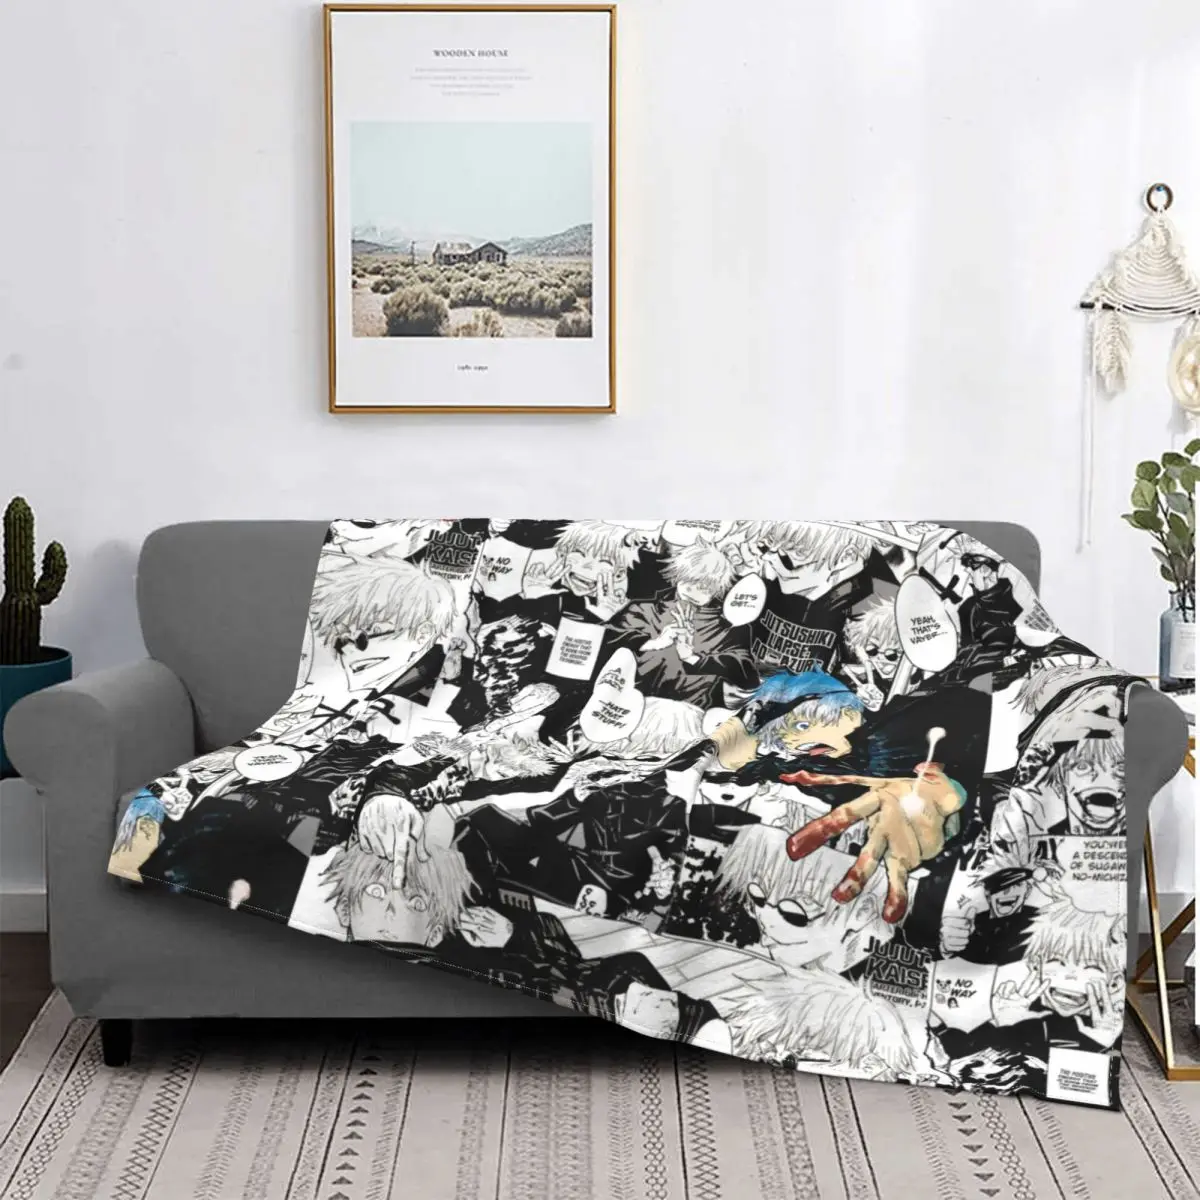 

Gojo Satoru Jujutsu Kaisen Manga Collage Blanket Fleece Spring Autumn Plaid Soft Throw Blanket For Home Couch Bedding Throws